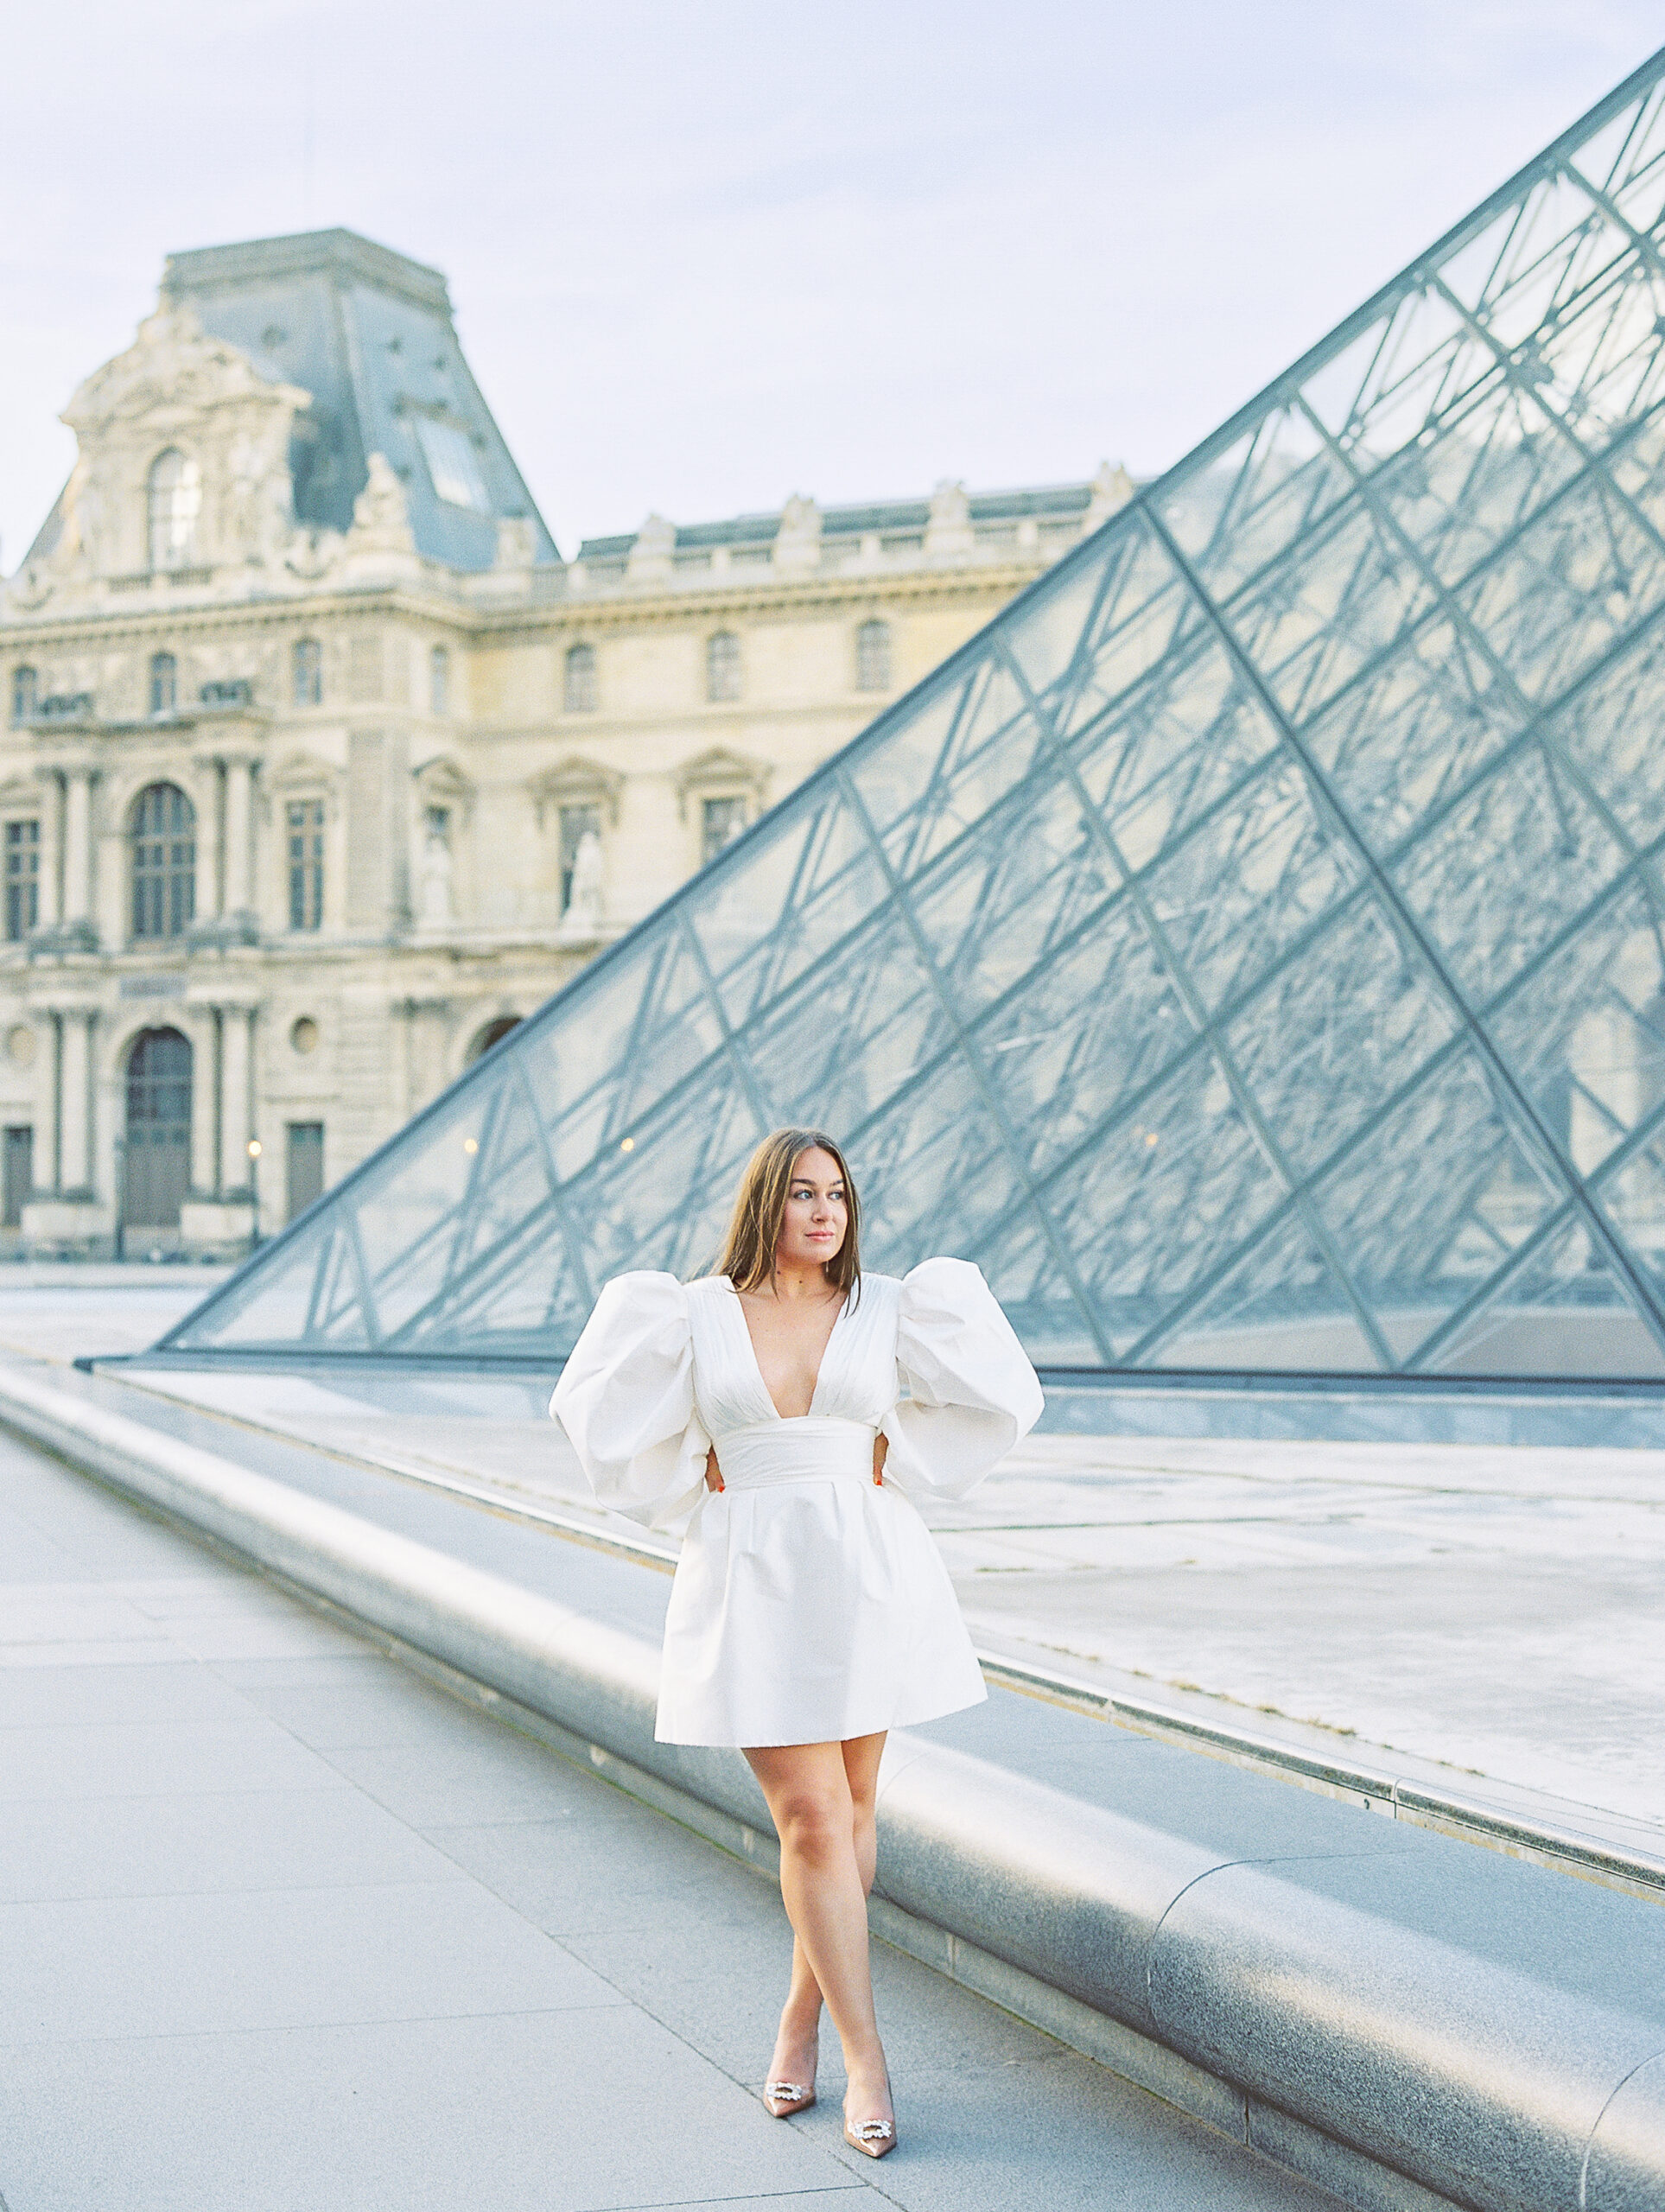 Film Paris Engagement Session by Paris Destination Wedding Photographer Katie Trauffer